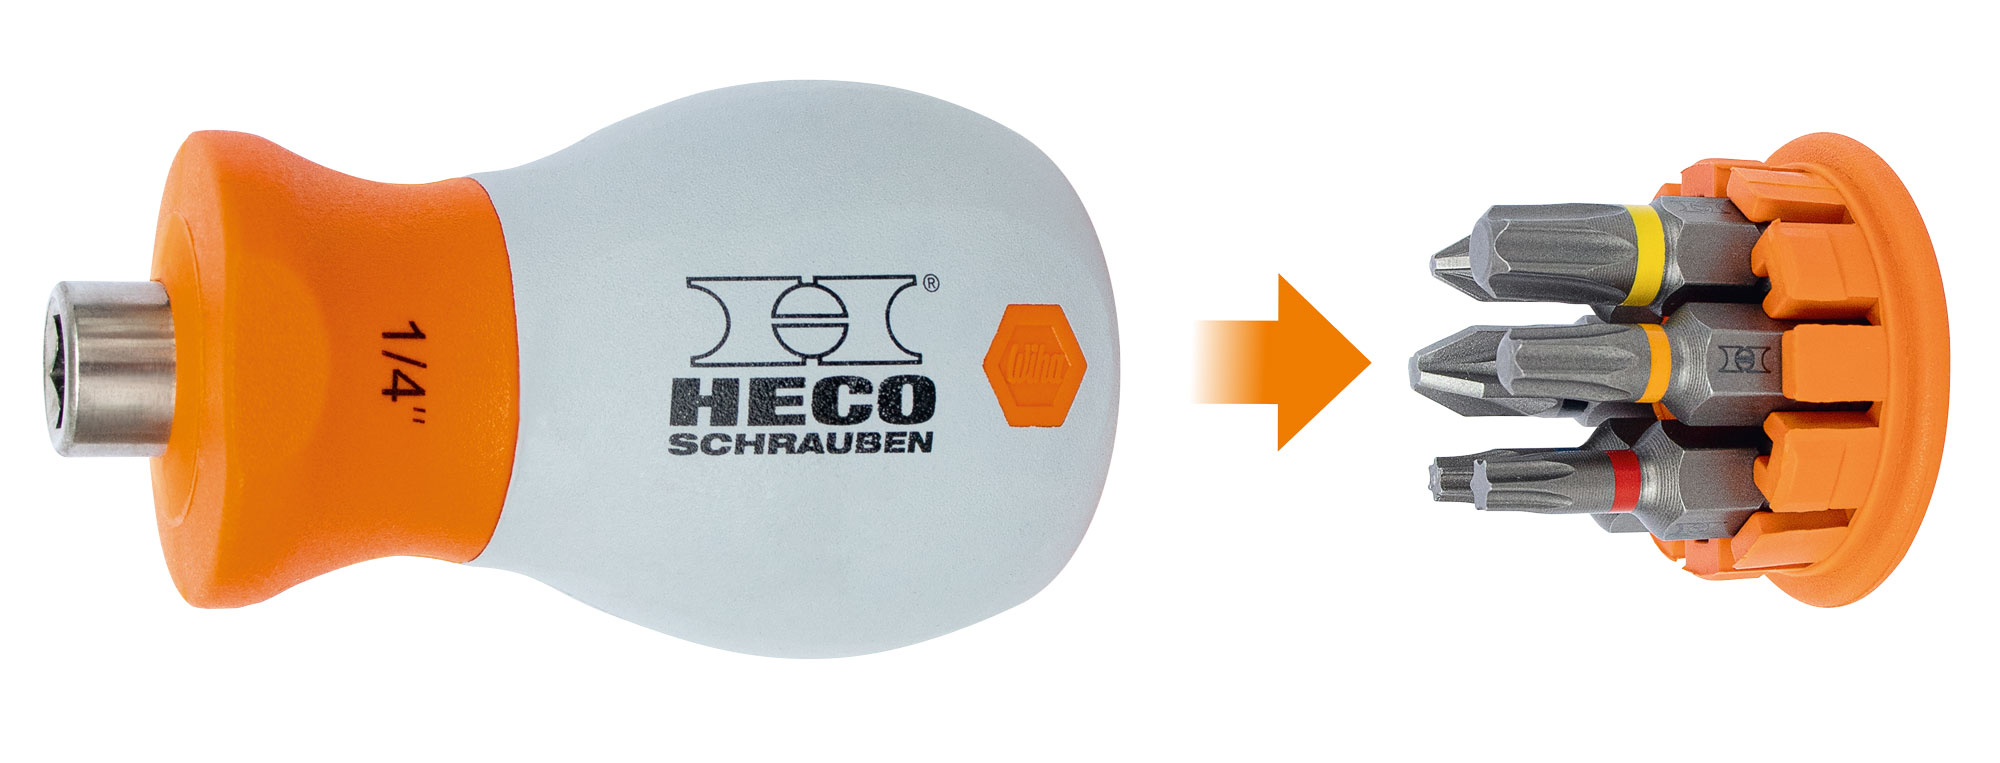 HECO-Stubby Mini-schroevendraaier met 6-delige bitmagazijn in handvat